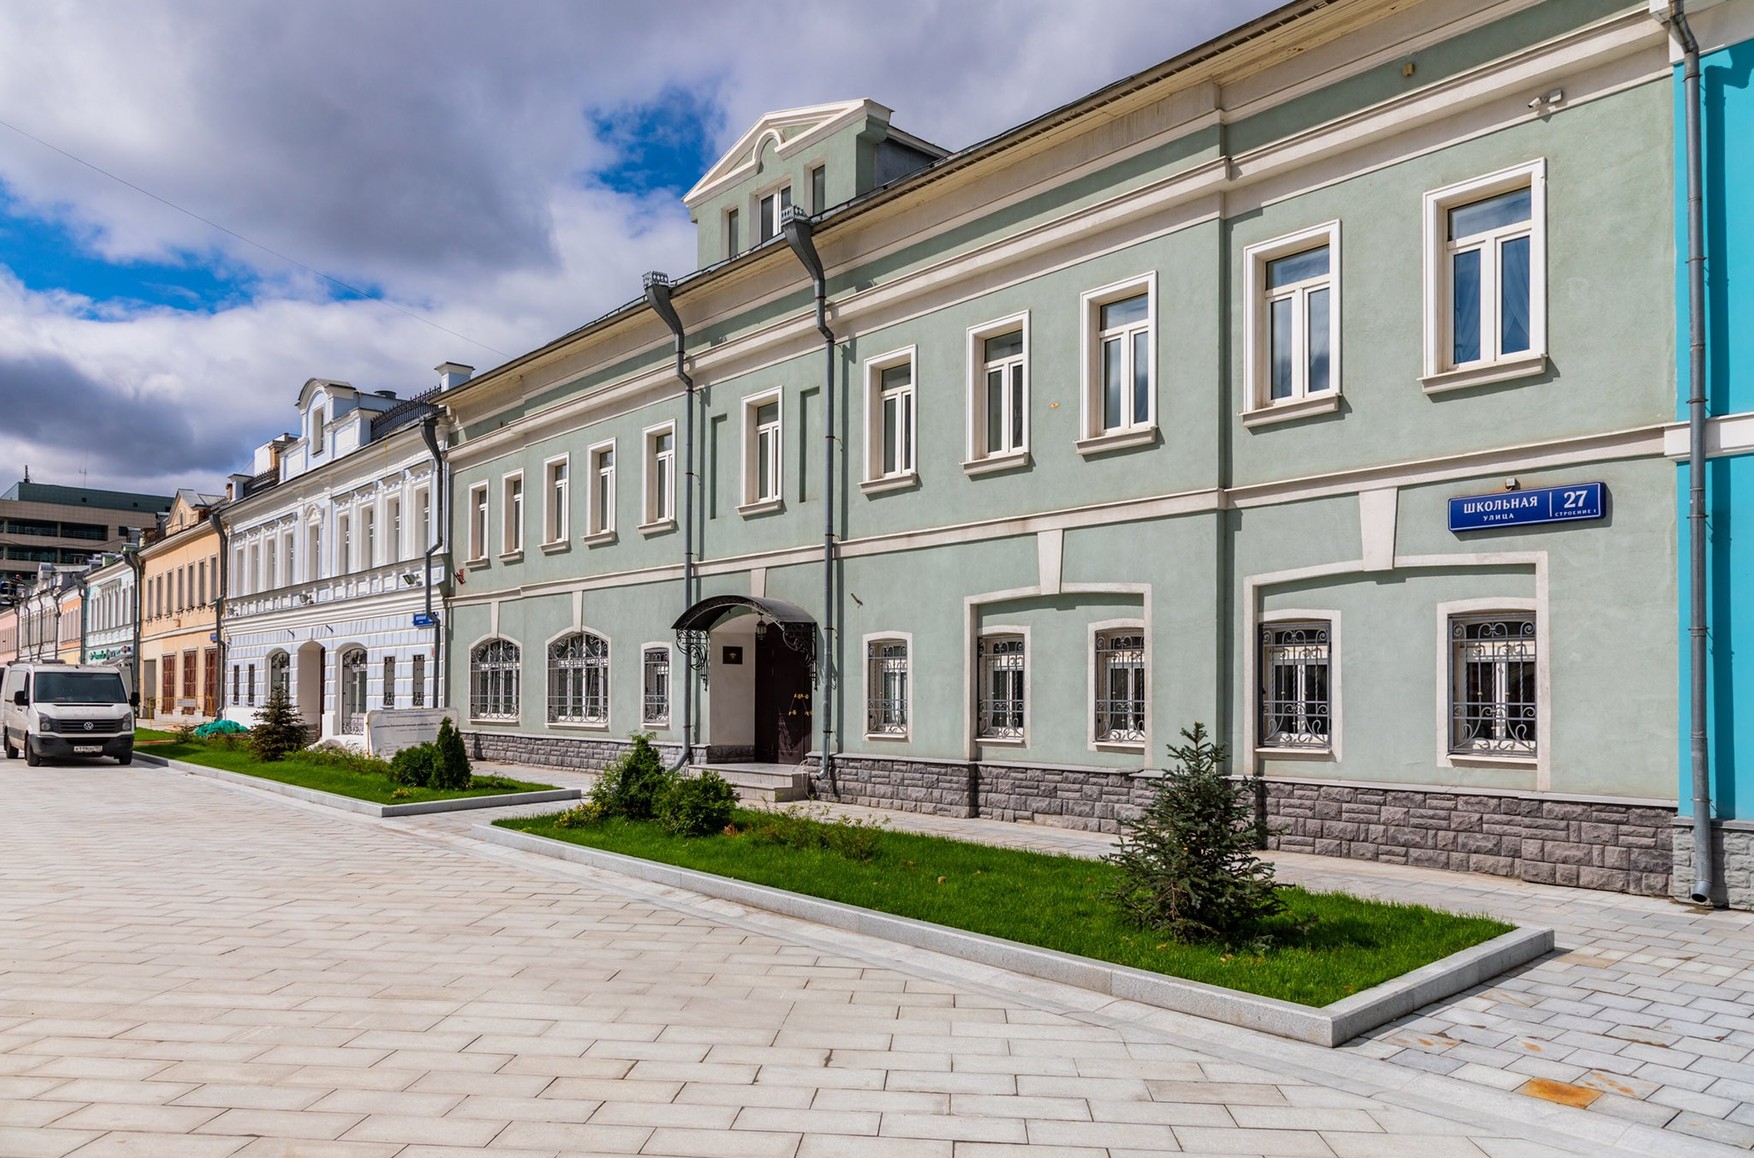 У Москві завершено розслідування про спробу розкрадання 120 об'єктів нерухомості, включаючи 27 історичних особняків